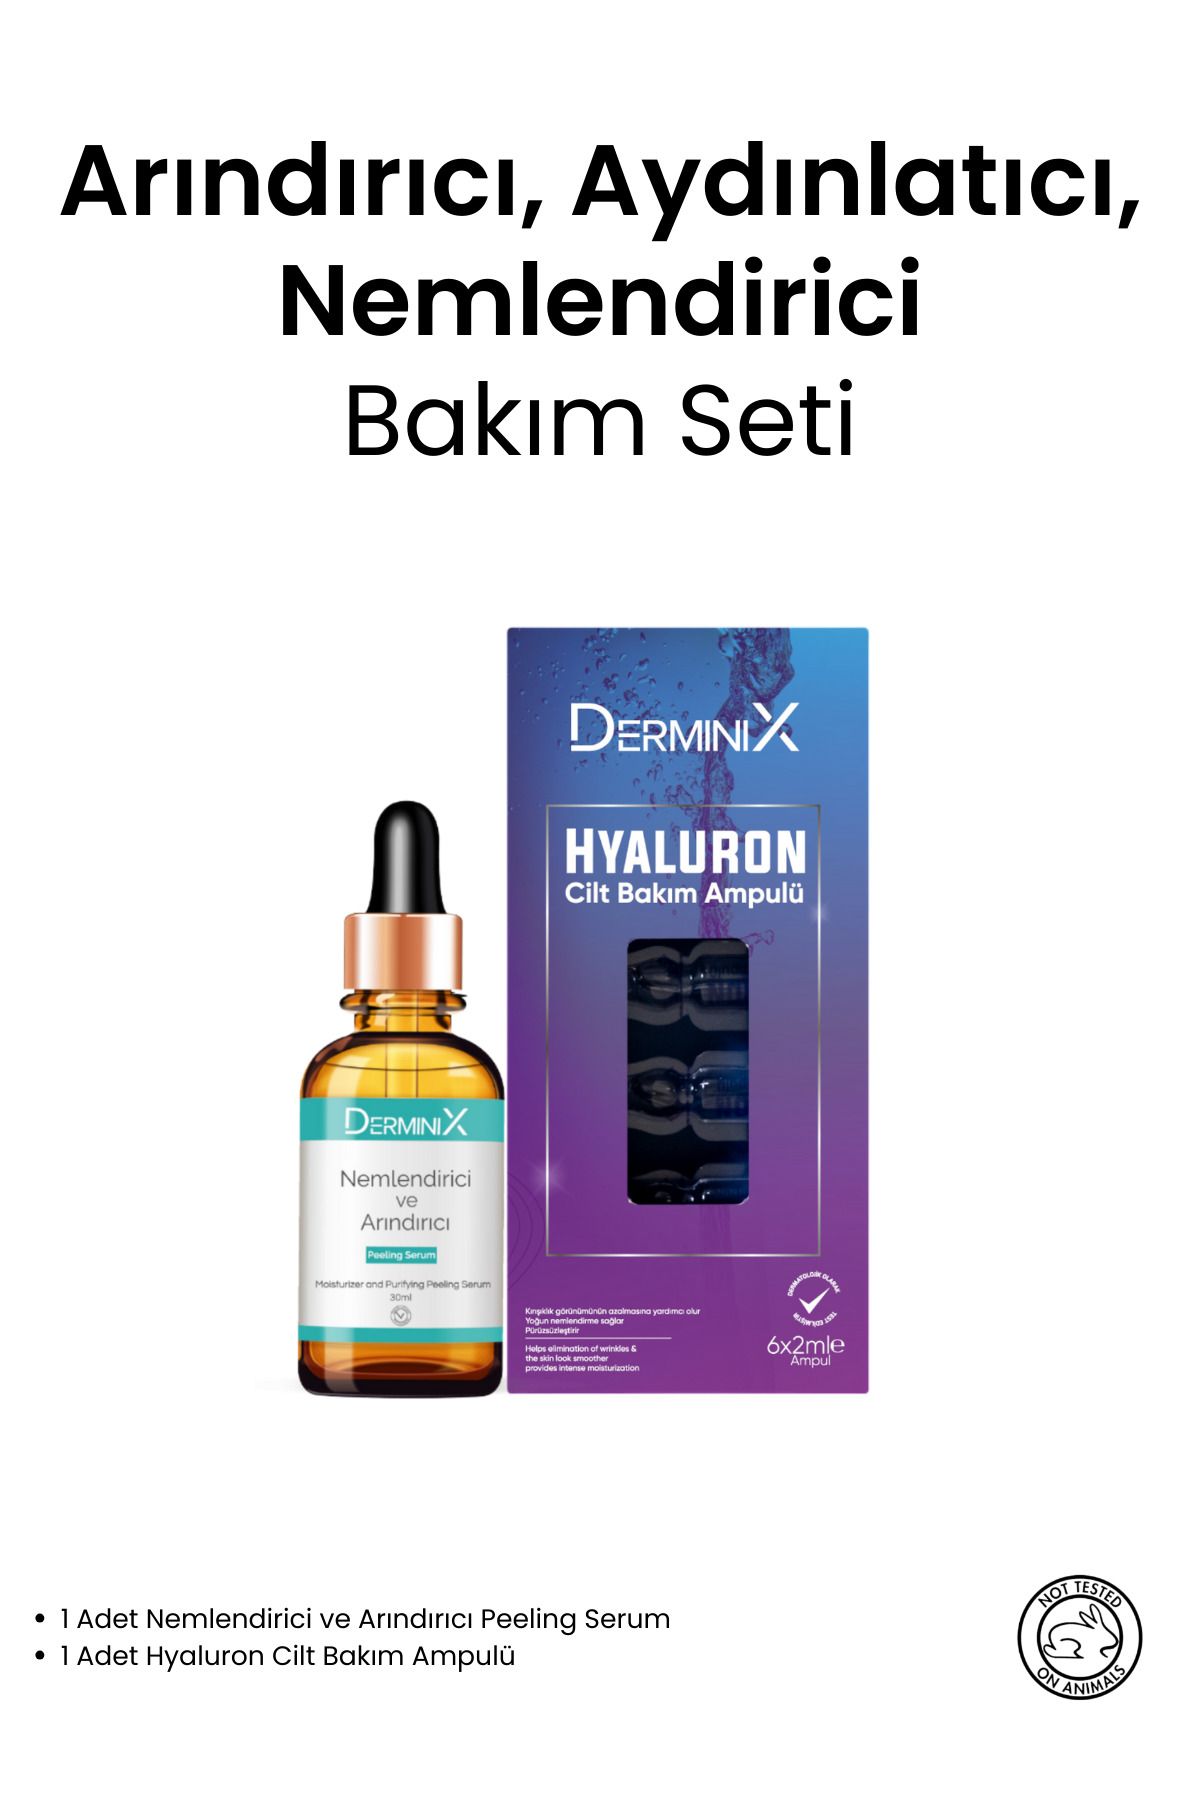 Derminix Arındırıcı, Aydınlatıcı ve Nemlendirici 2'li set (Hyaluronic Acid + Peeling Serum)